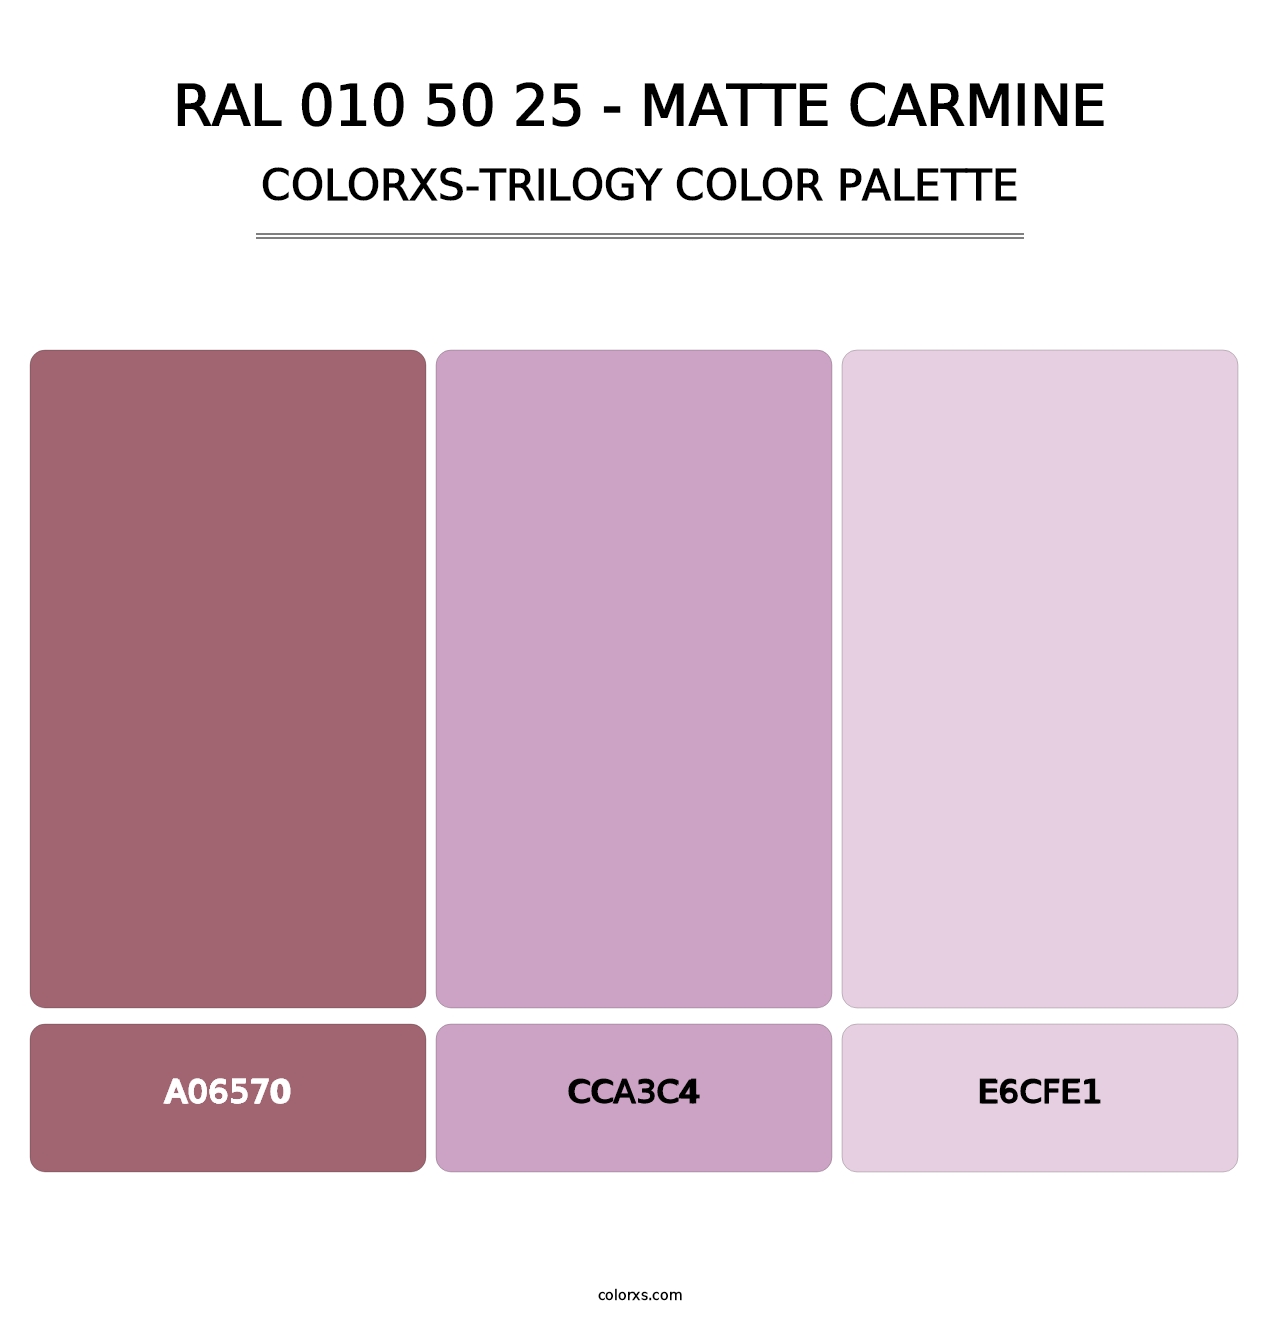 RAL 010 50 25 - Matte Carmine - Colorxs Trilogy Palette